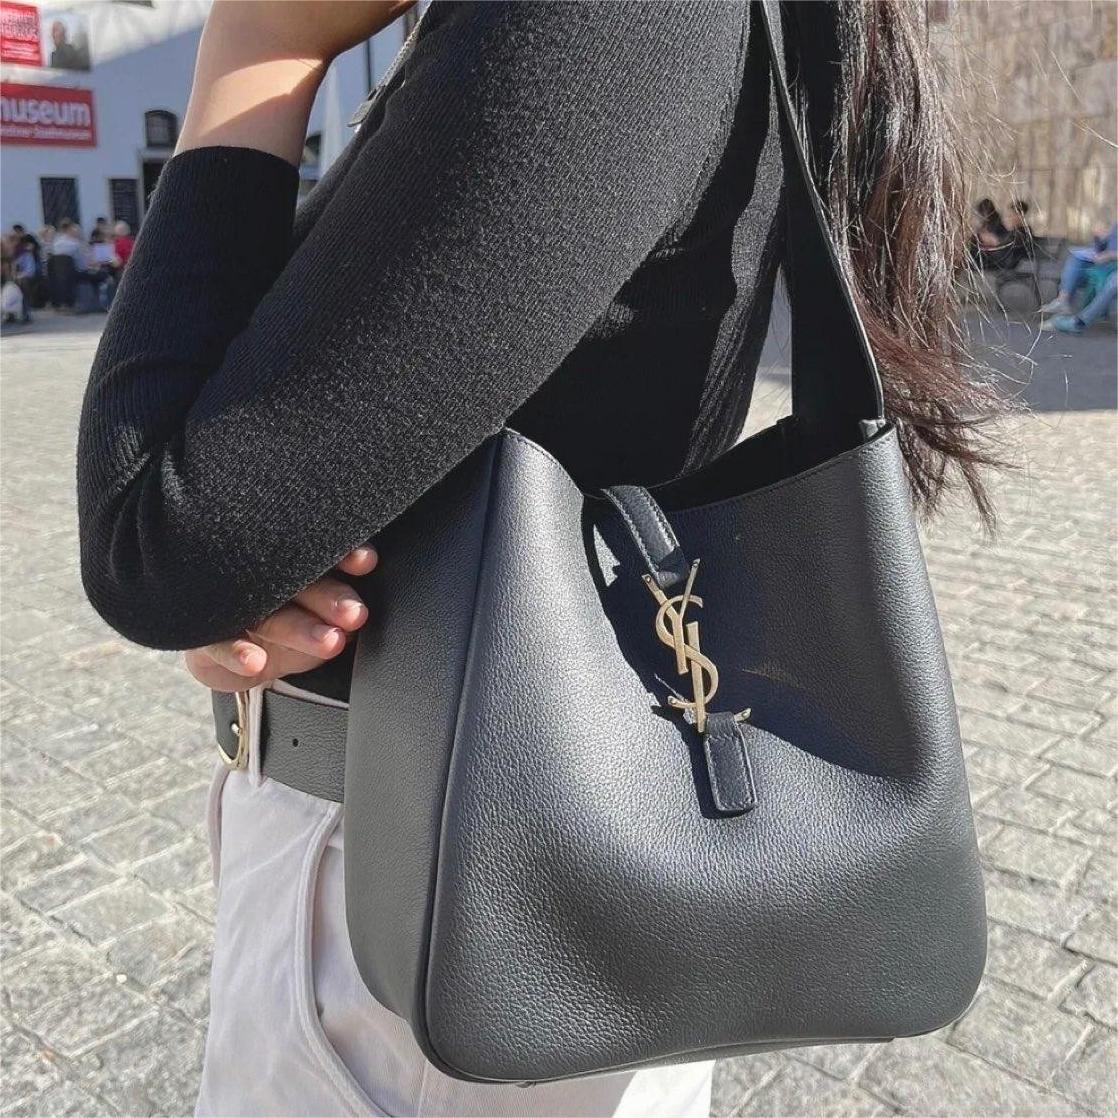 YSL Fashion lady bags Handbags Bag Shoulder